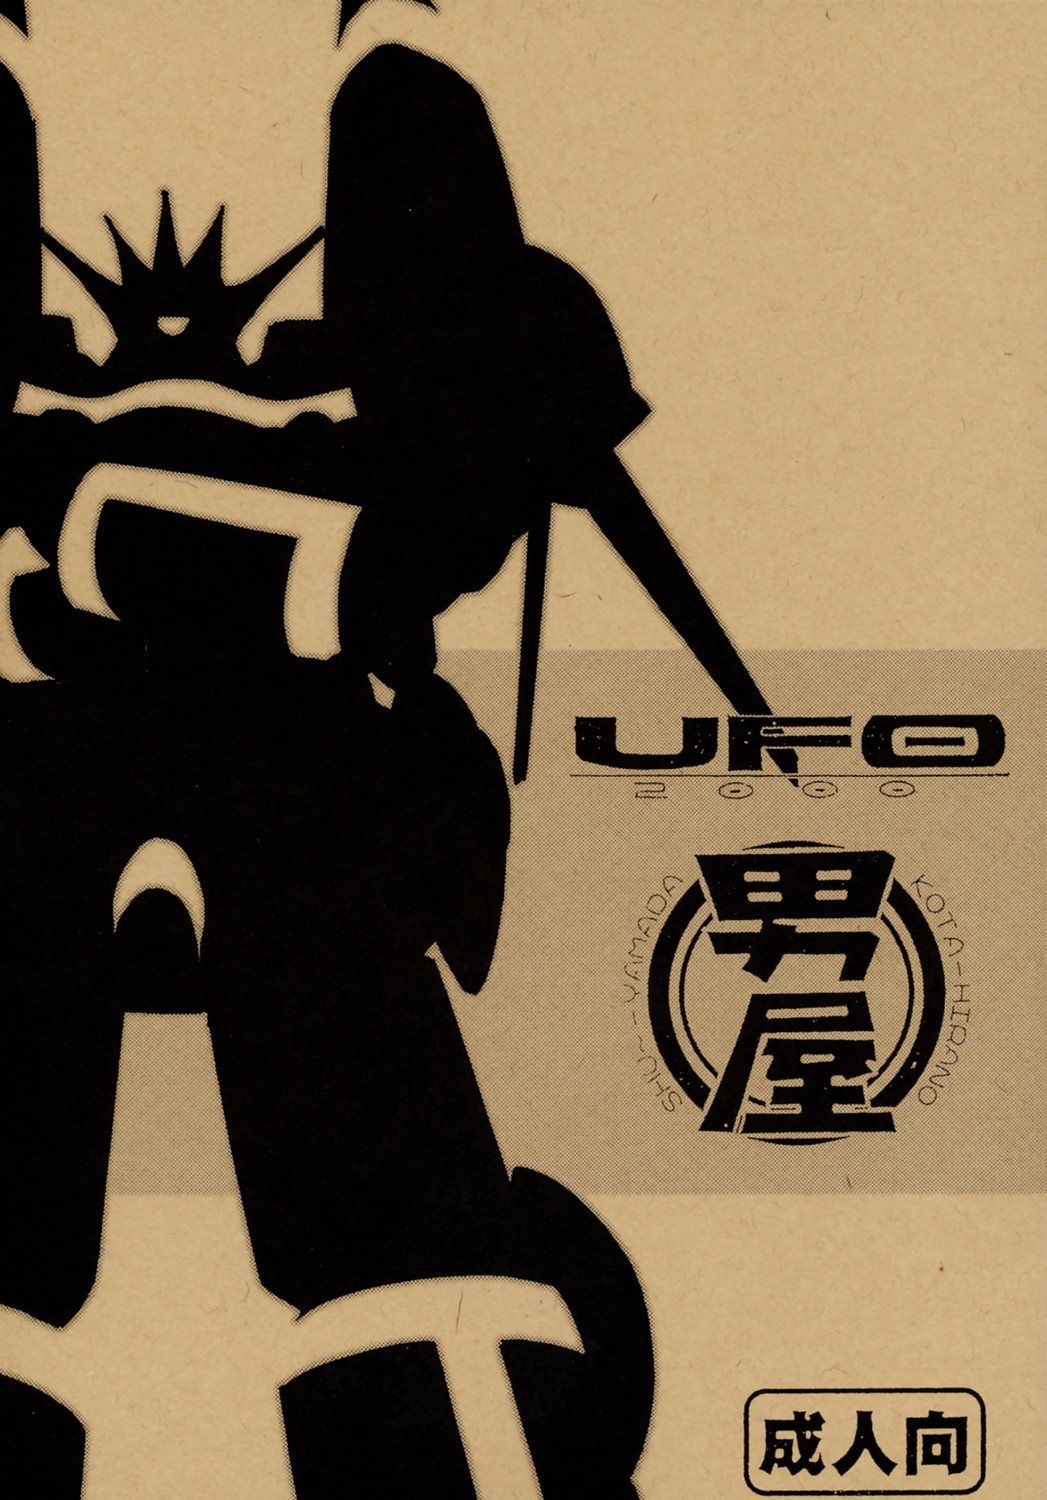 UFO 2000 UFO-TOP gunbuster hentai manga